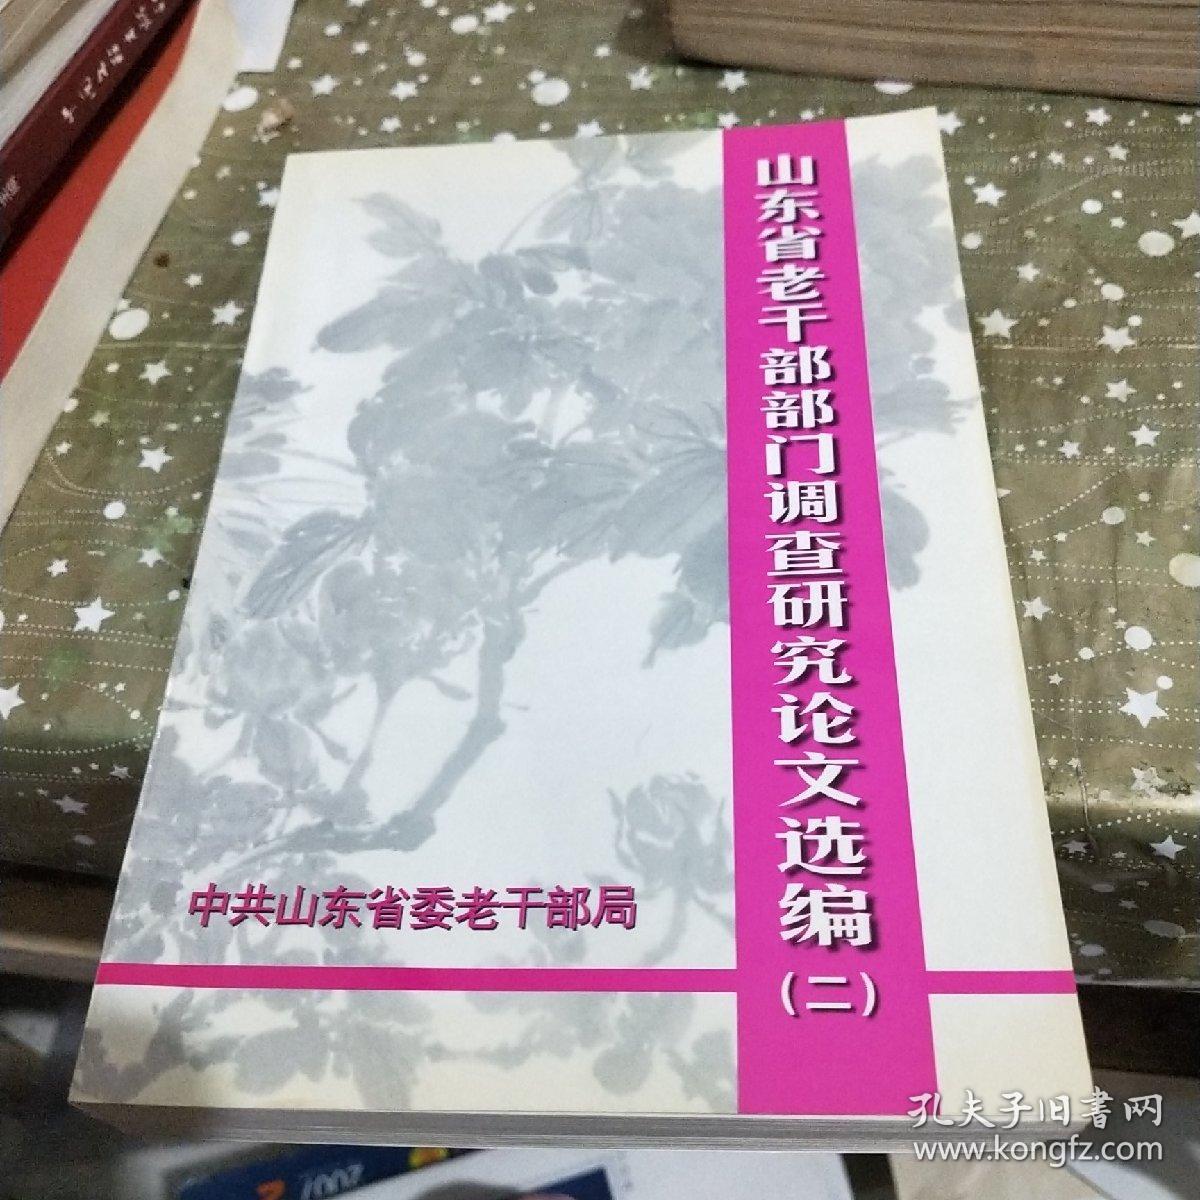 山东省老干部部门调查研究论文选编(二) /杂93